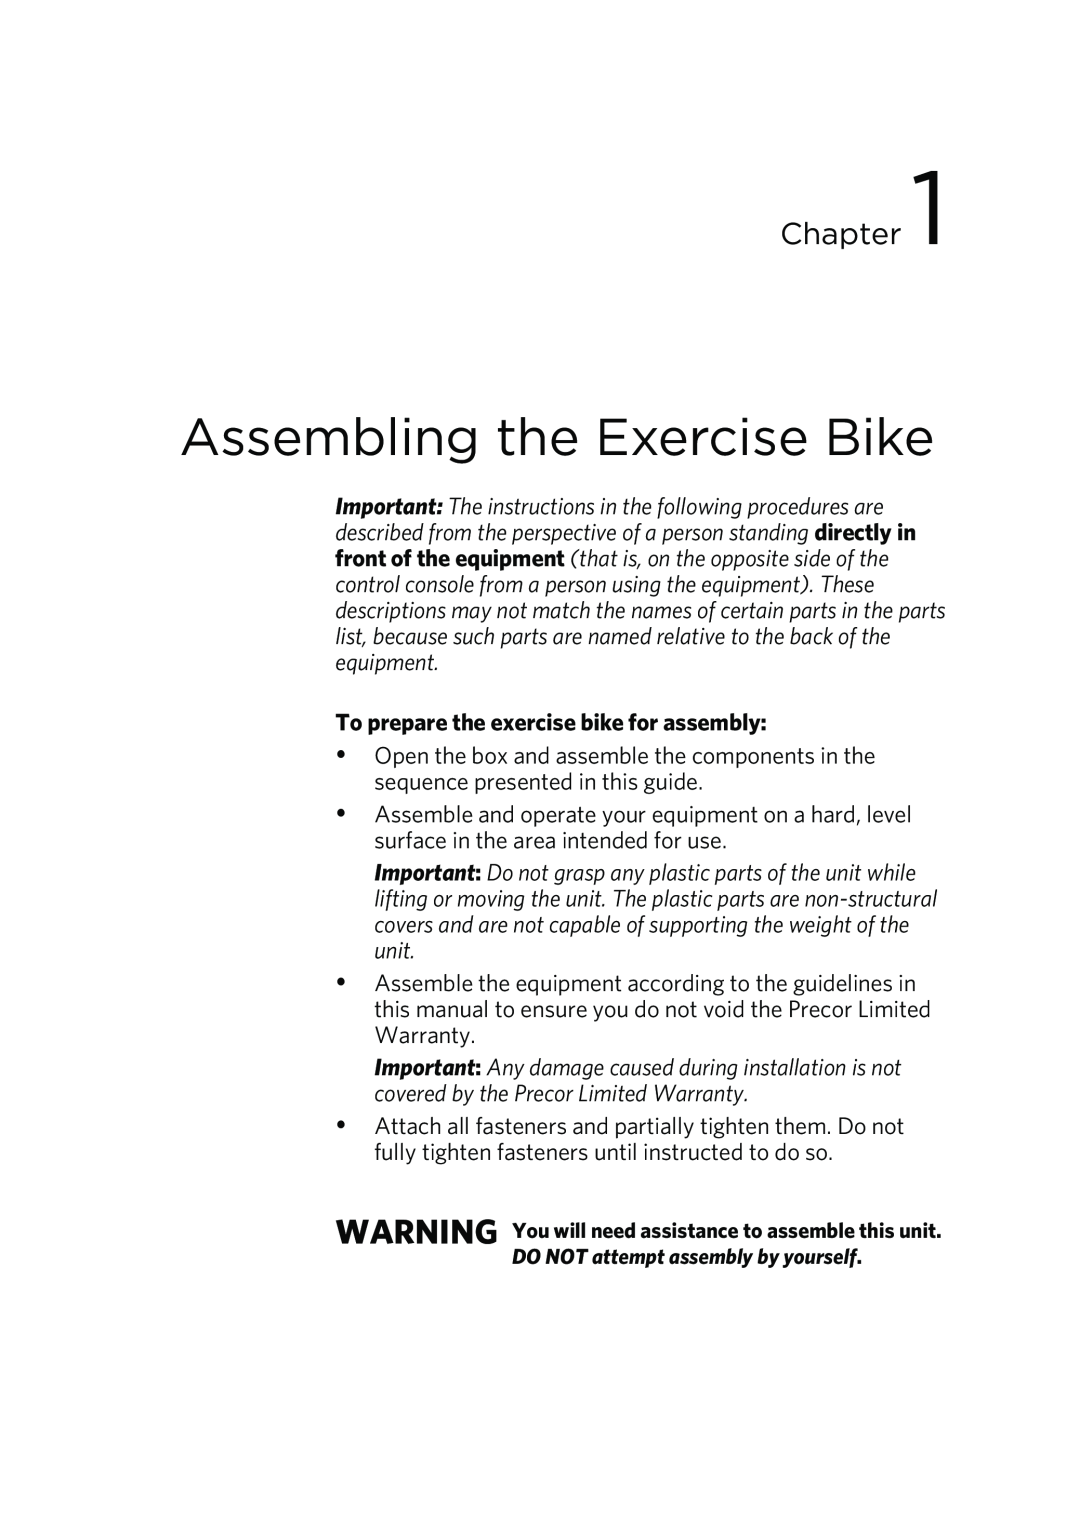 Precor P80 manual Assembling the Exercise Bike, To prepare the exercise bike for assembly, Chapter 